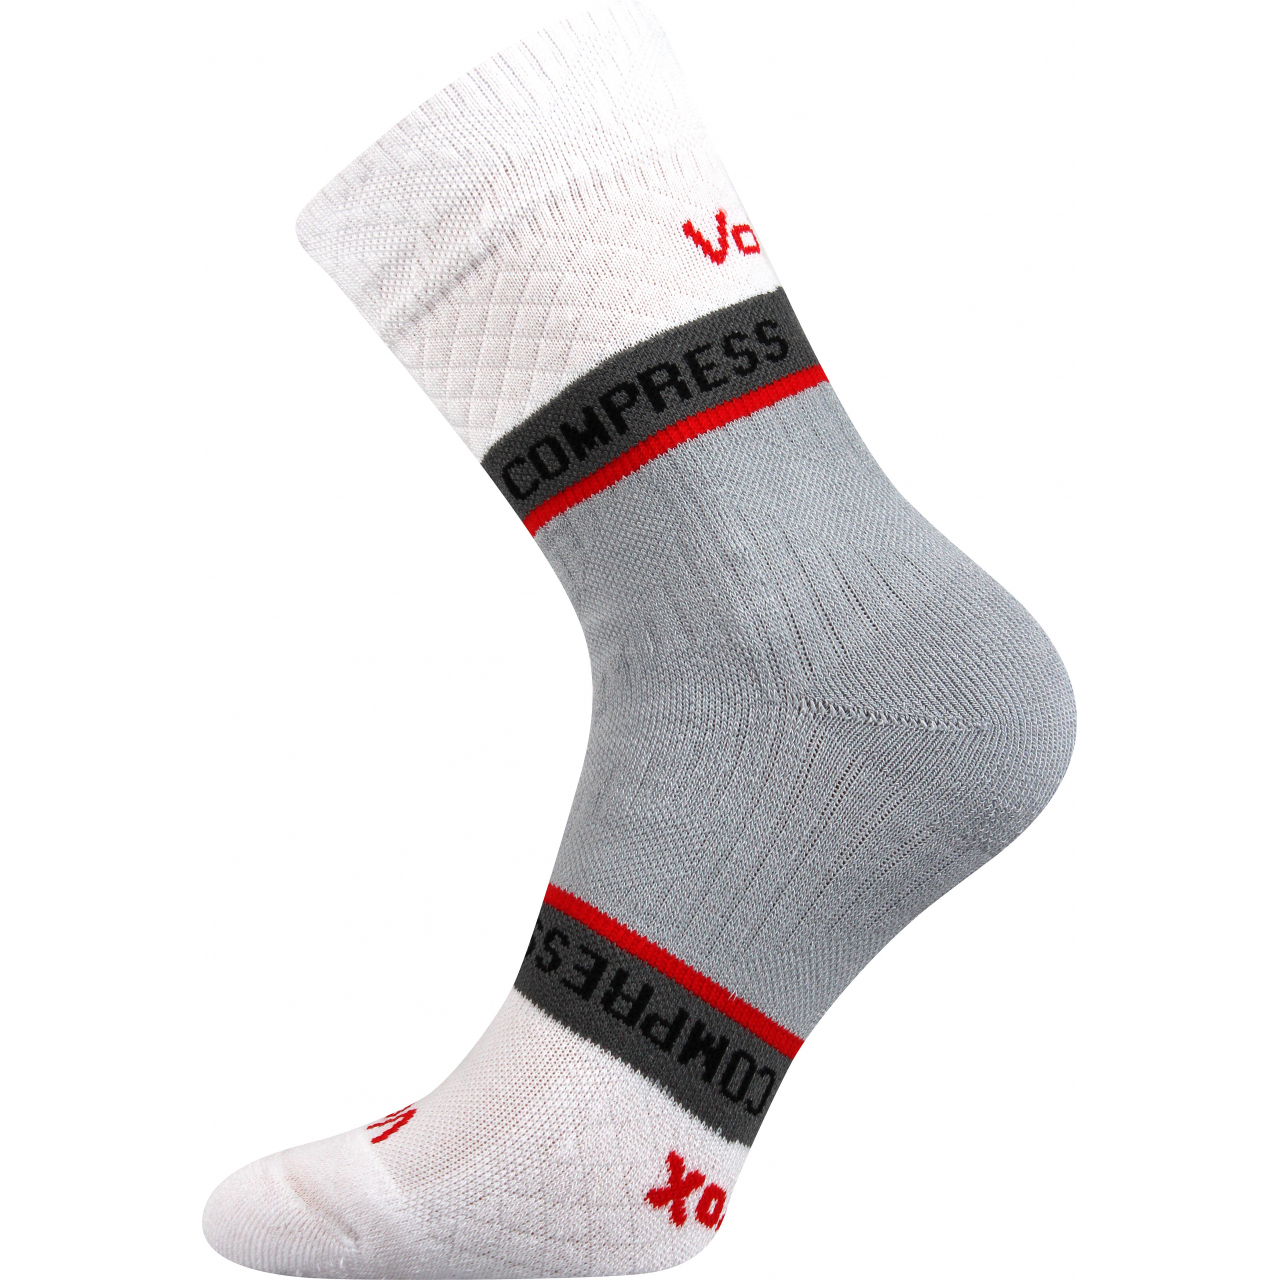 Ponožky kompresní Voxx Fixan - bílé, 39-42